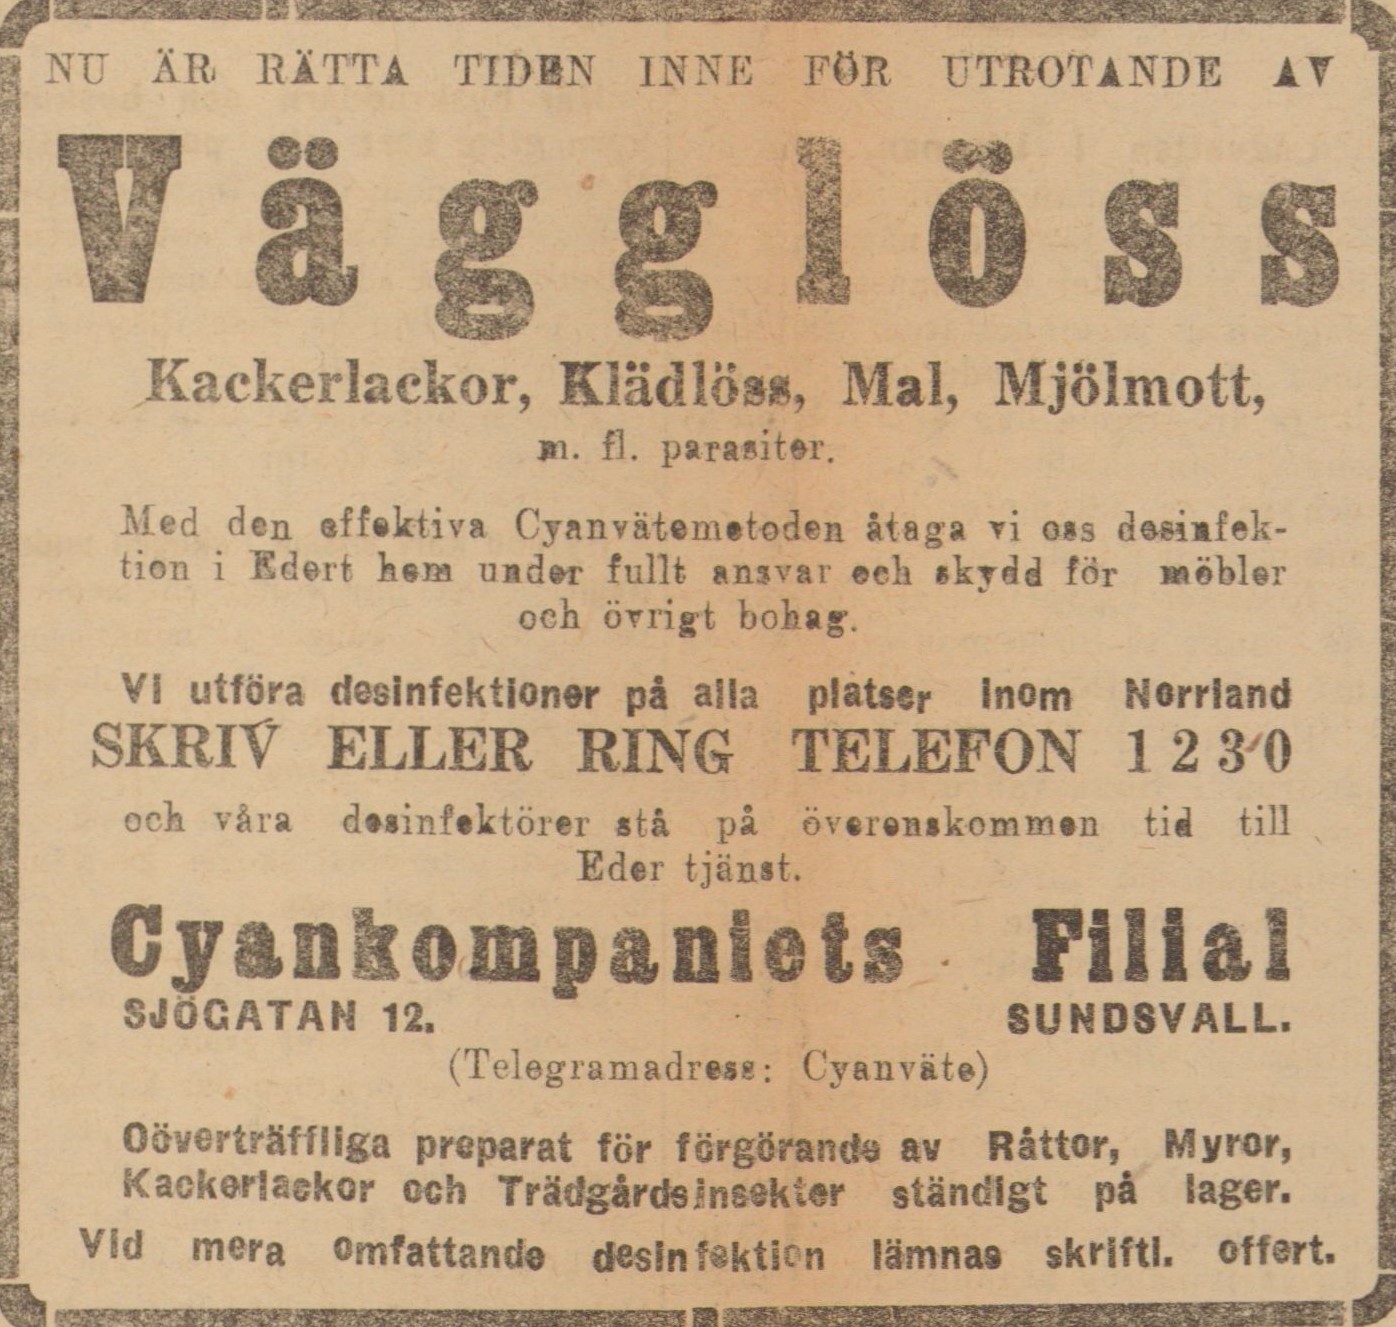 Tidningsreklam för cyanväte från 1921, annonsen har en svart ram som omger texten.